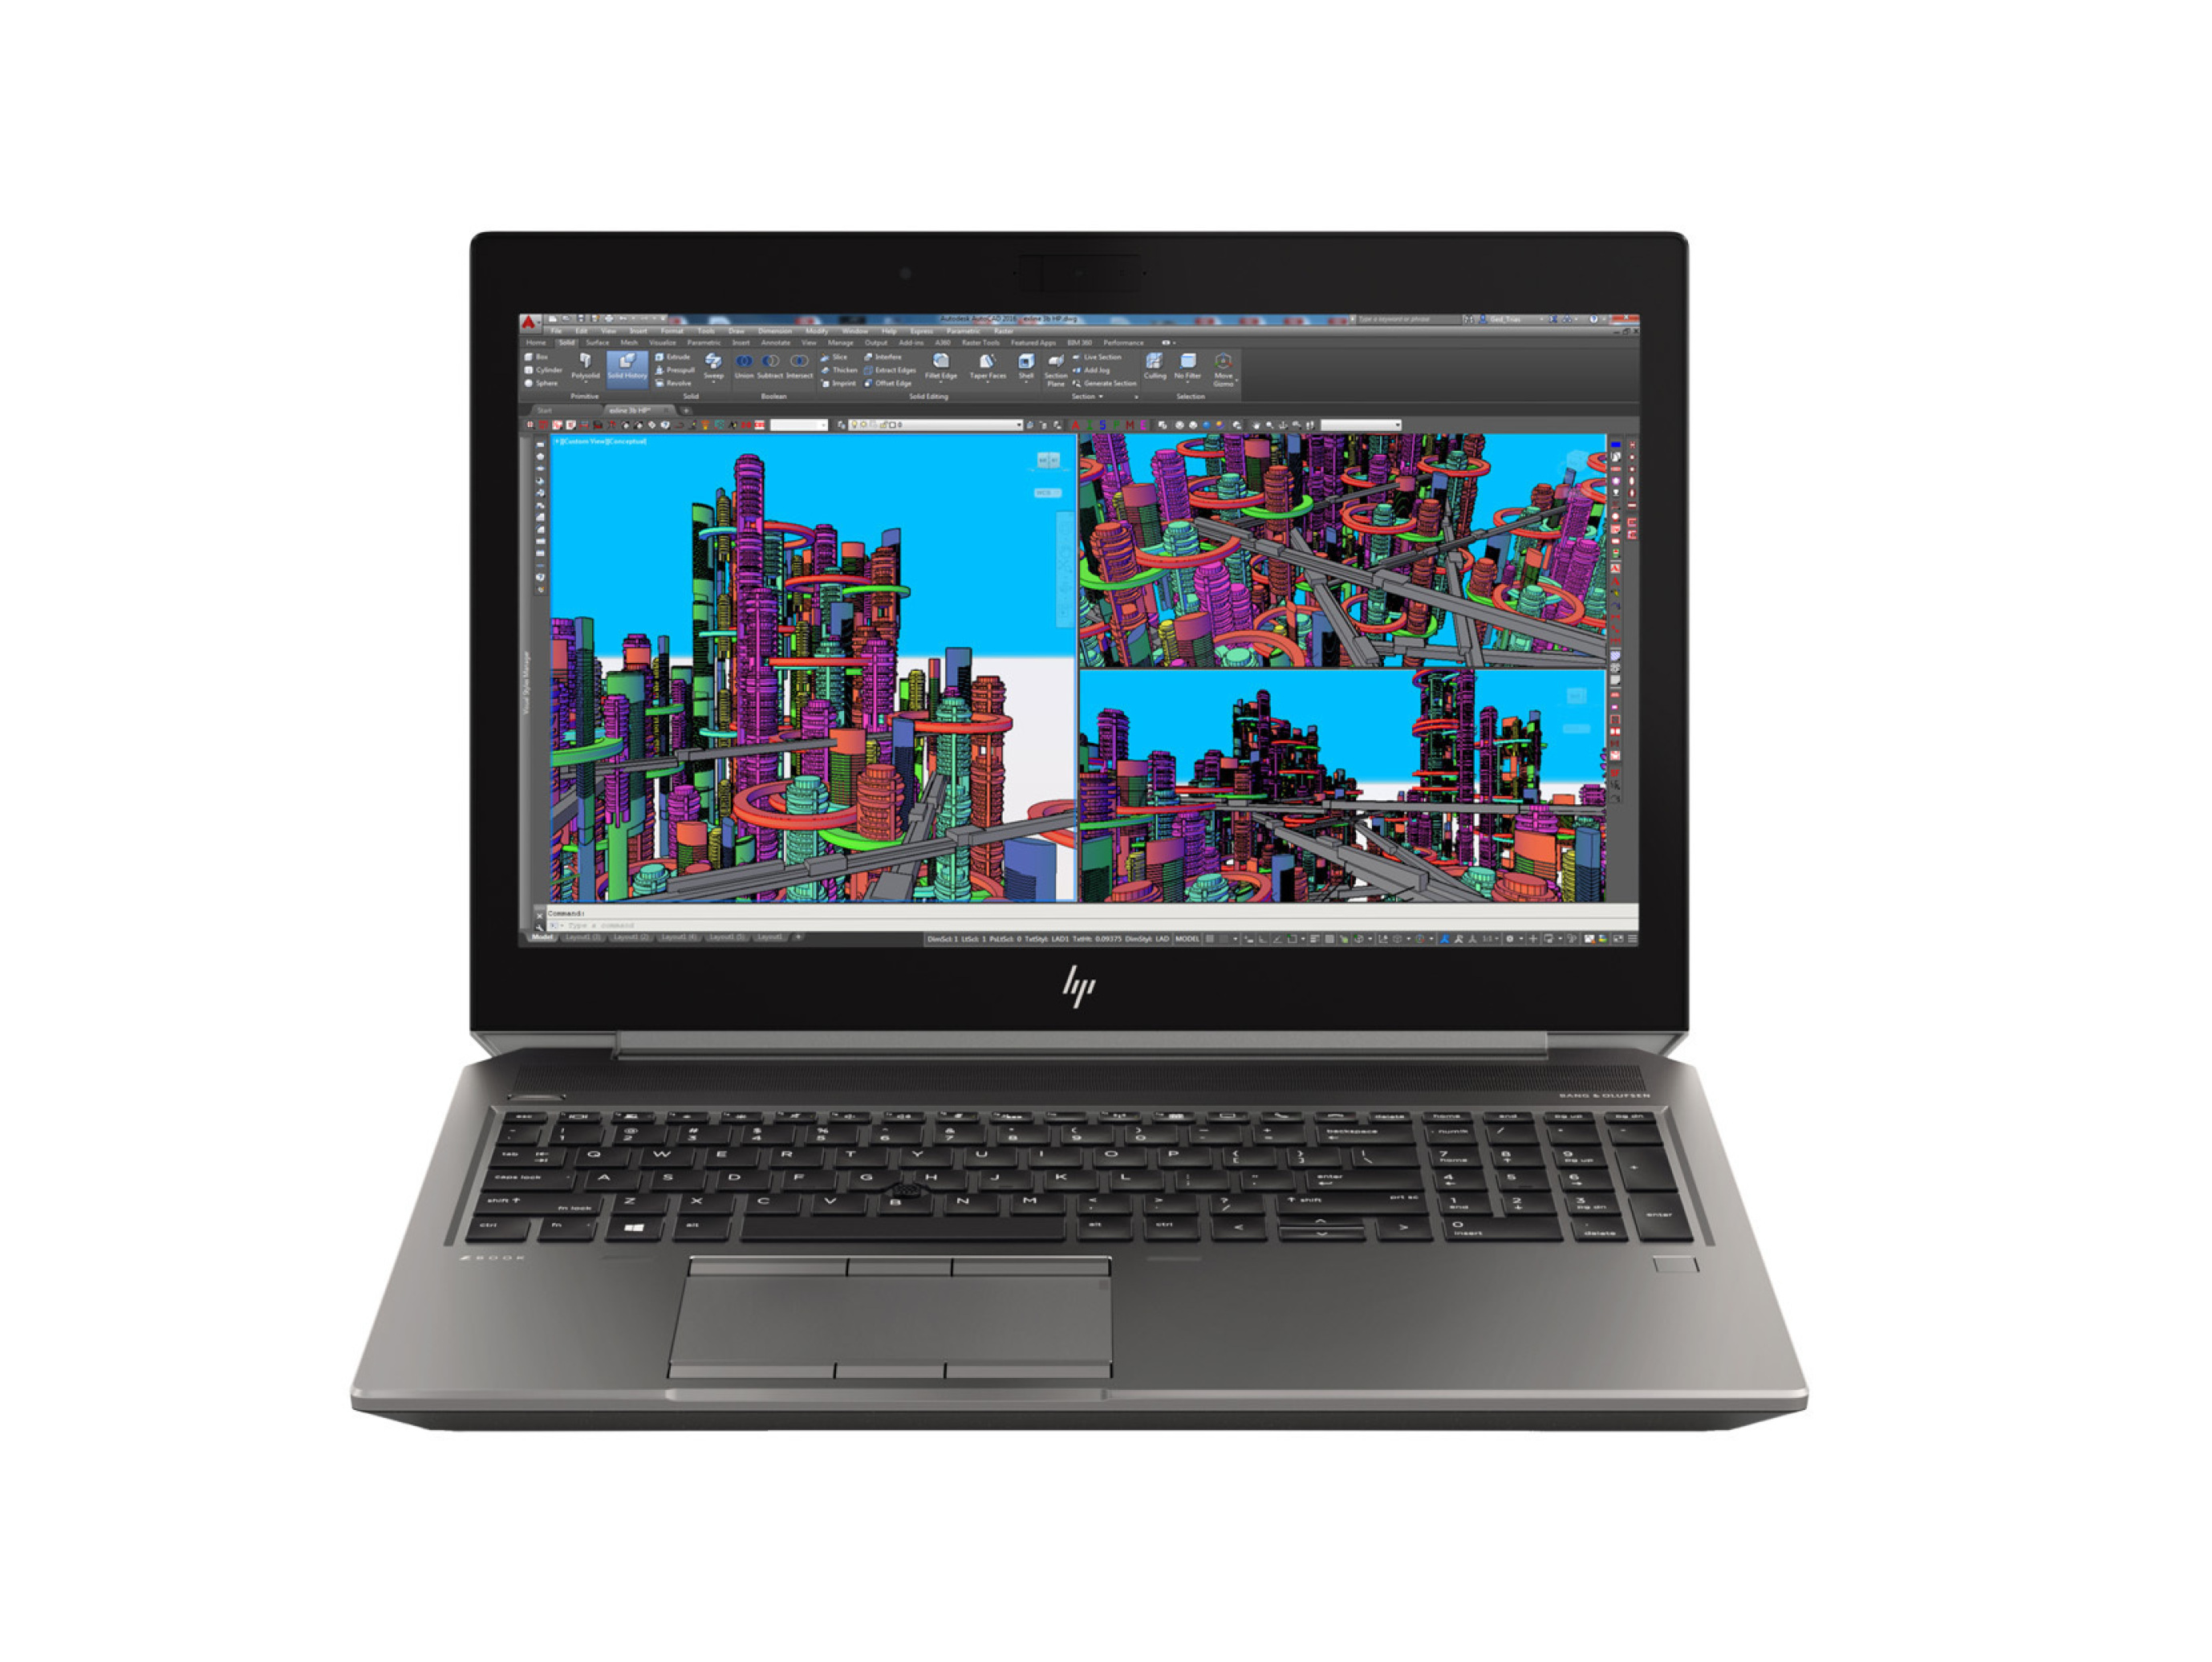  لپ تاپ 15.6 اینچی 4K برند HP مدل ZBOOK 15 G5 با پردازنده XEON E-2186M گرافیک Quadro P2000 4GB | لاکچری لپ تاپ 